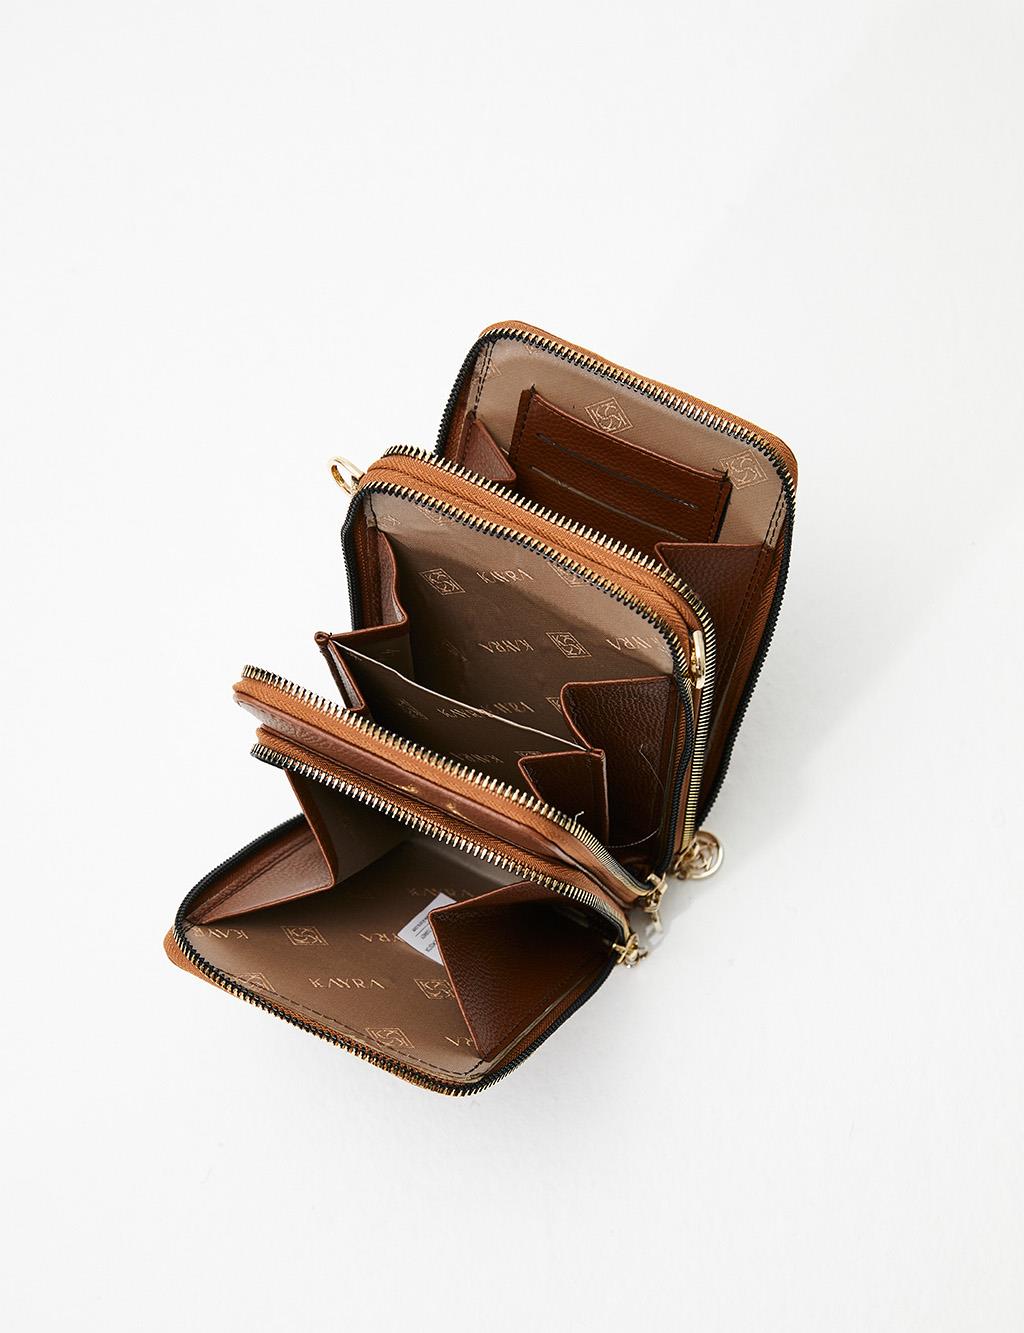 Three Compartment Bag Wallet Tobacco